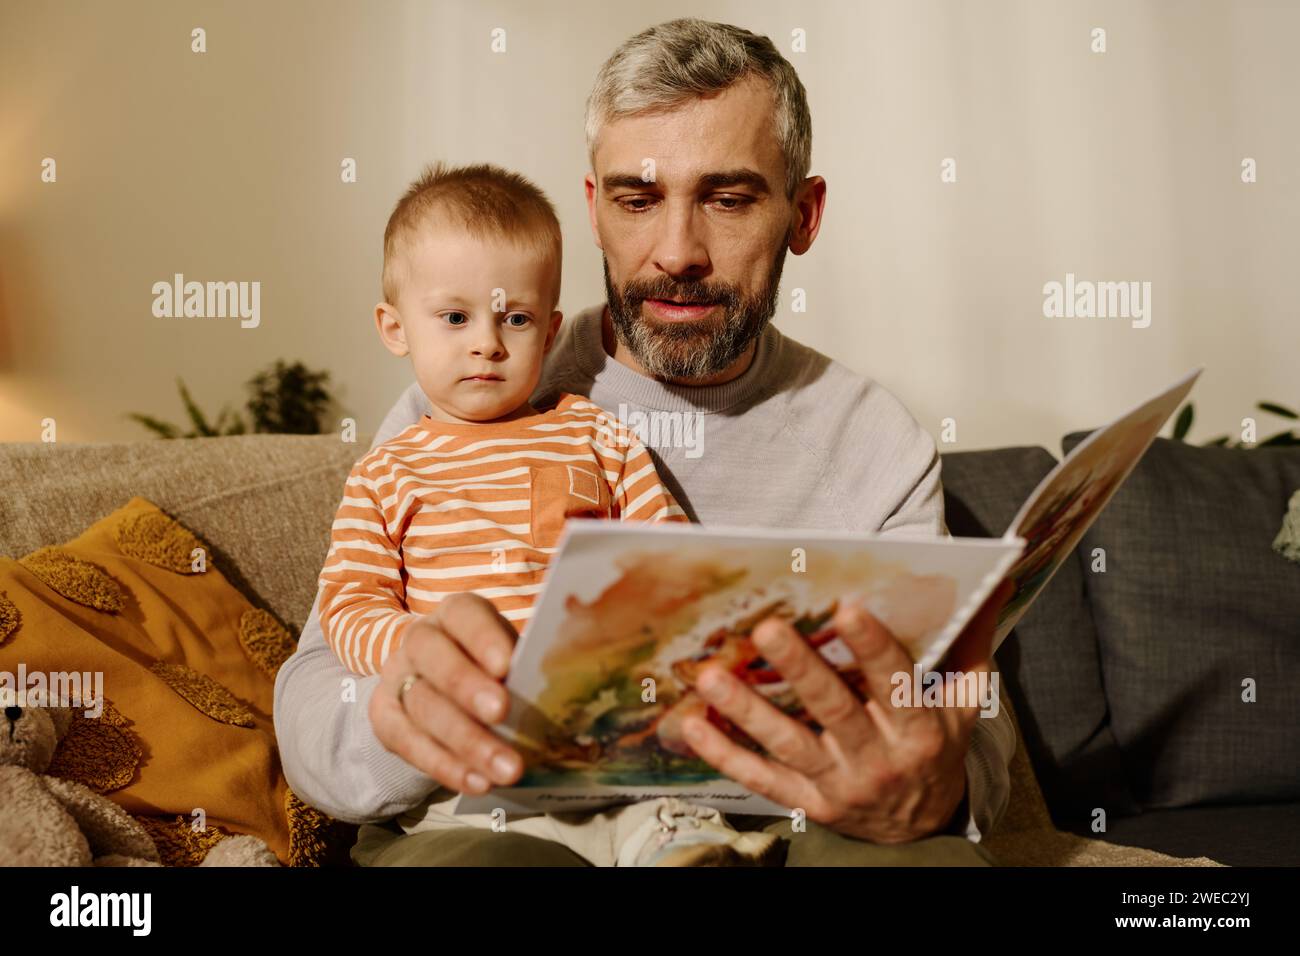 Entzückender Junge, der sich die Seite eines offenen Buches mit Comics oder Märchen anschaut, während er auf den Knien seines Vaters sitzt, der ihm die Geschichte vorliest Stockfoto